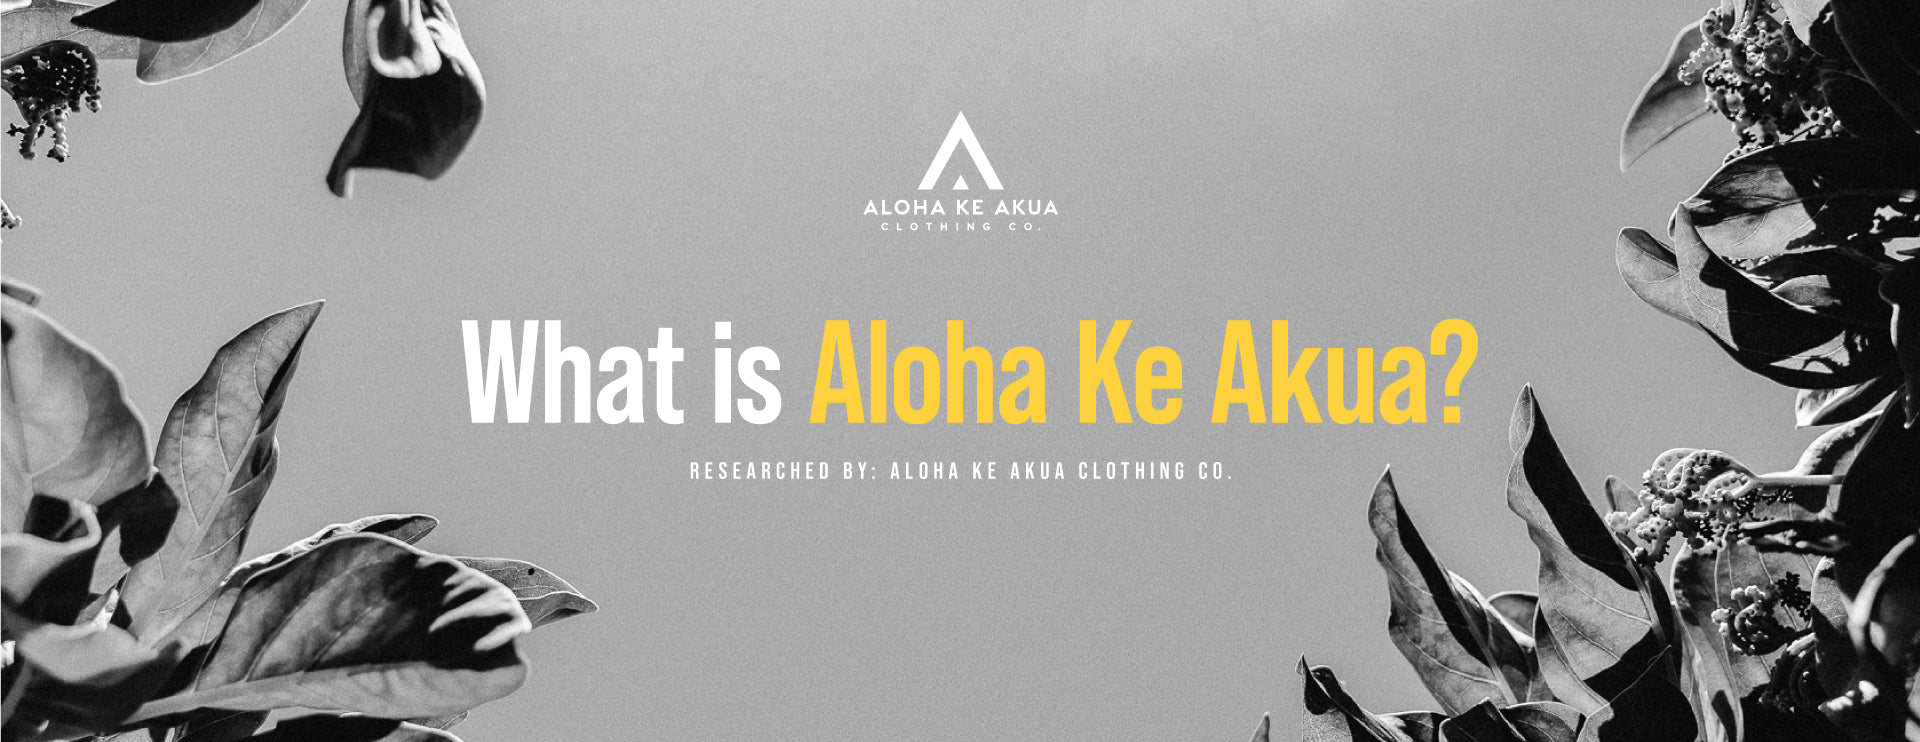 What is Aloha Ke Akua?